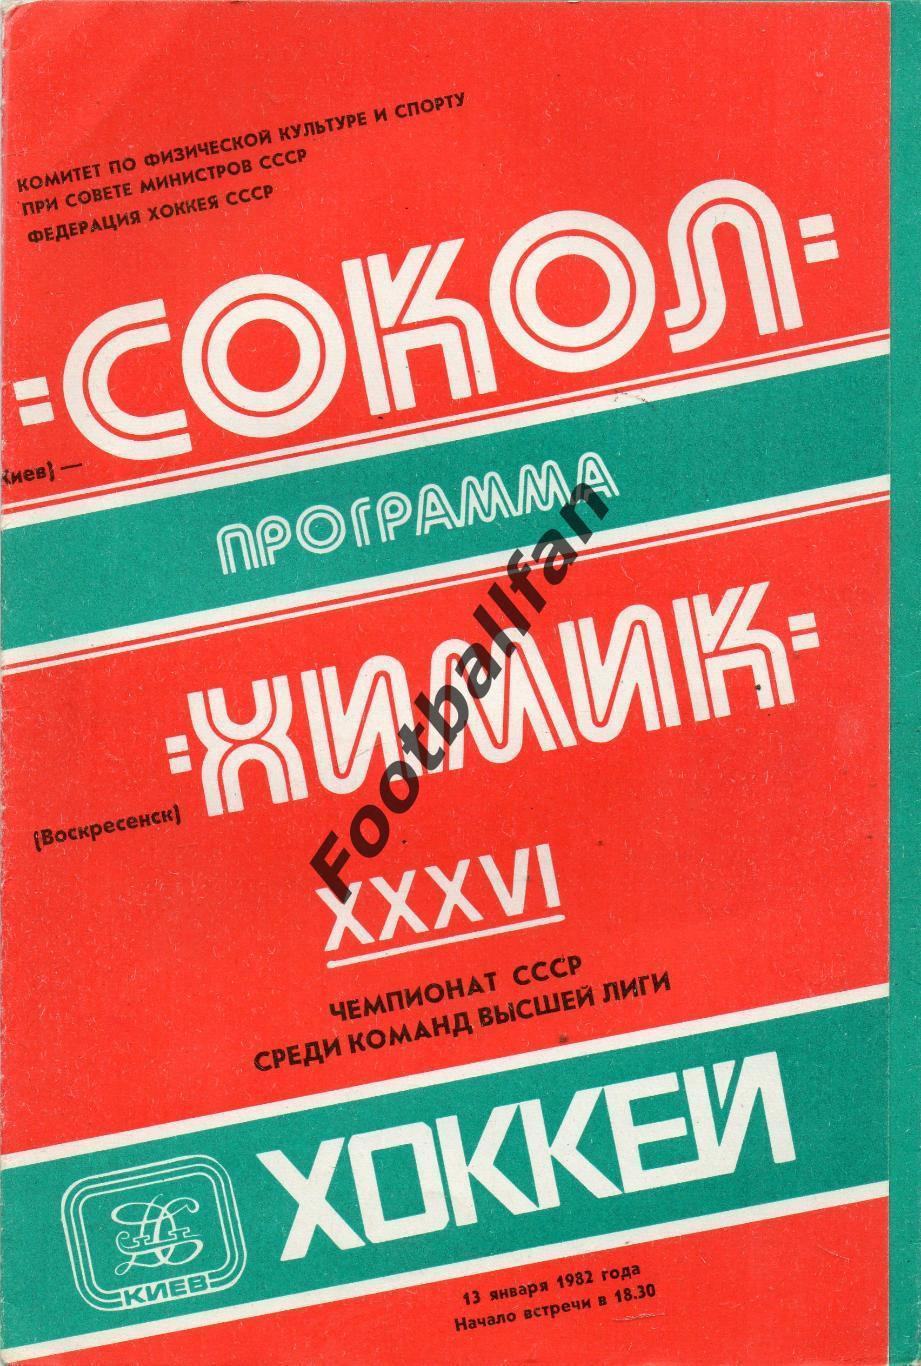 Сокол Киев - Химик Воскресенск 13.01.1982